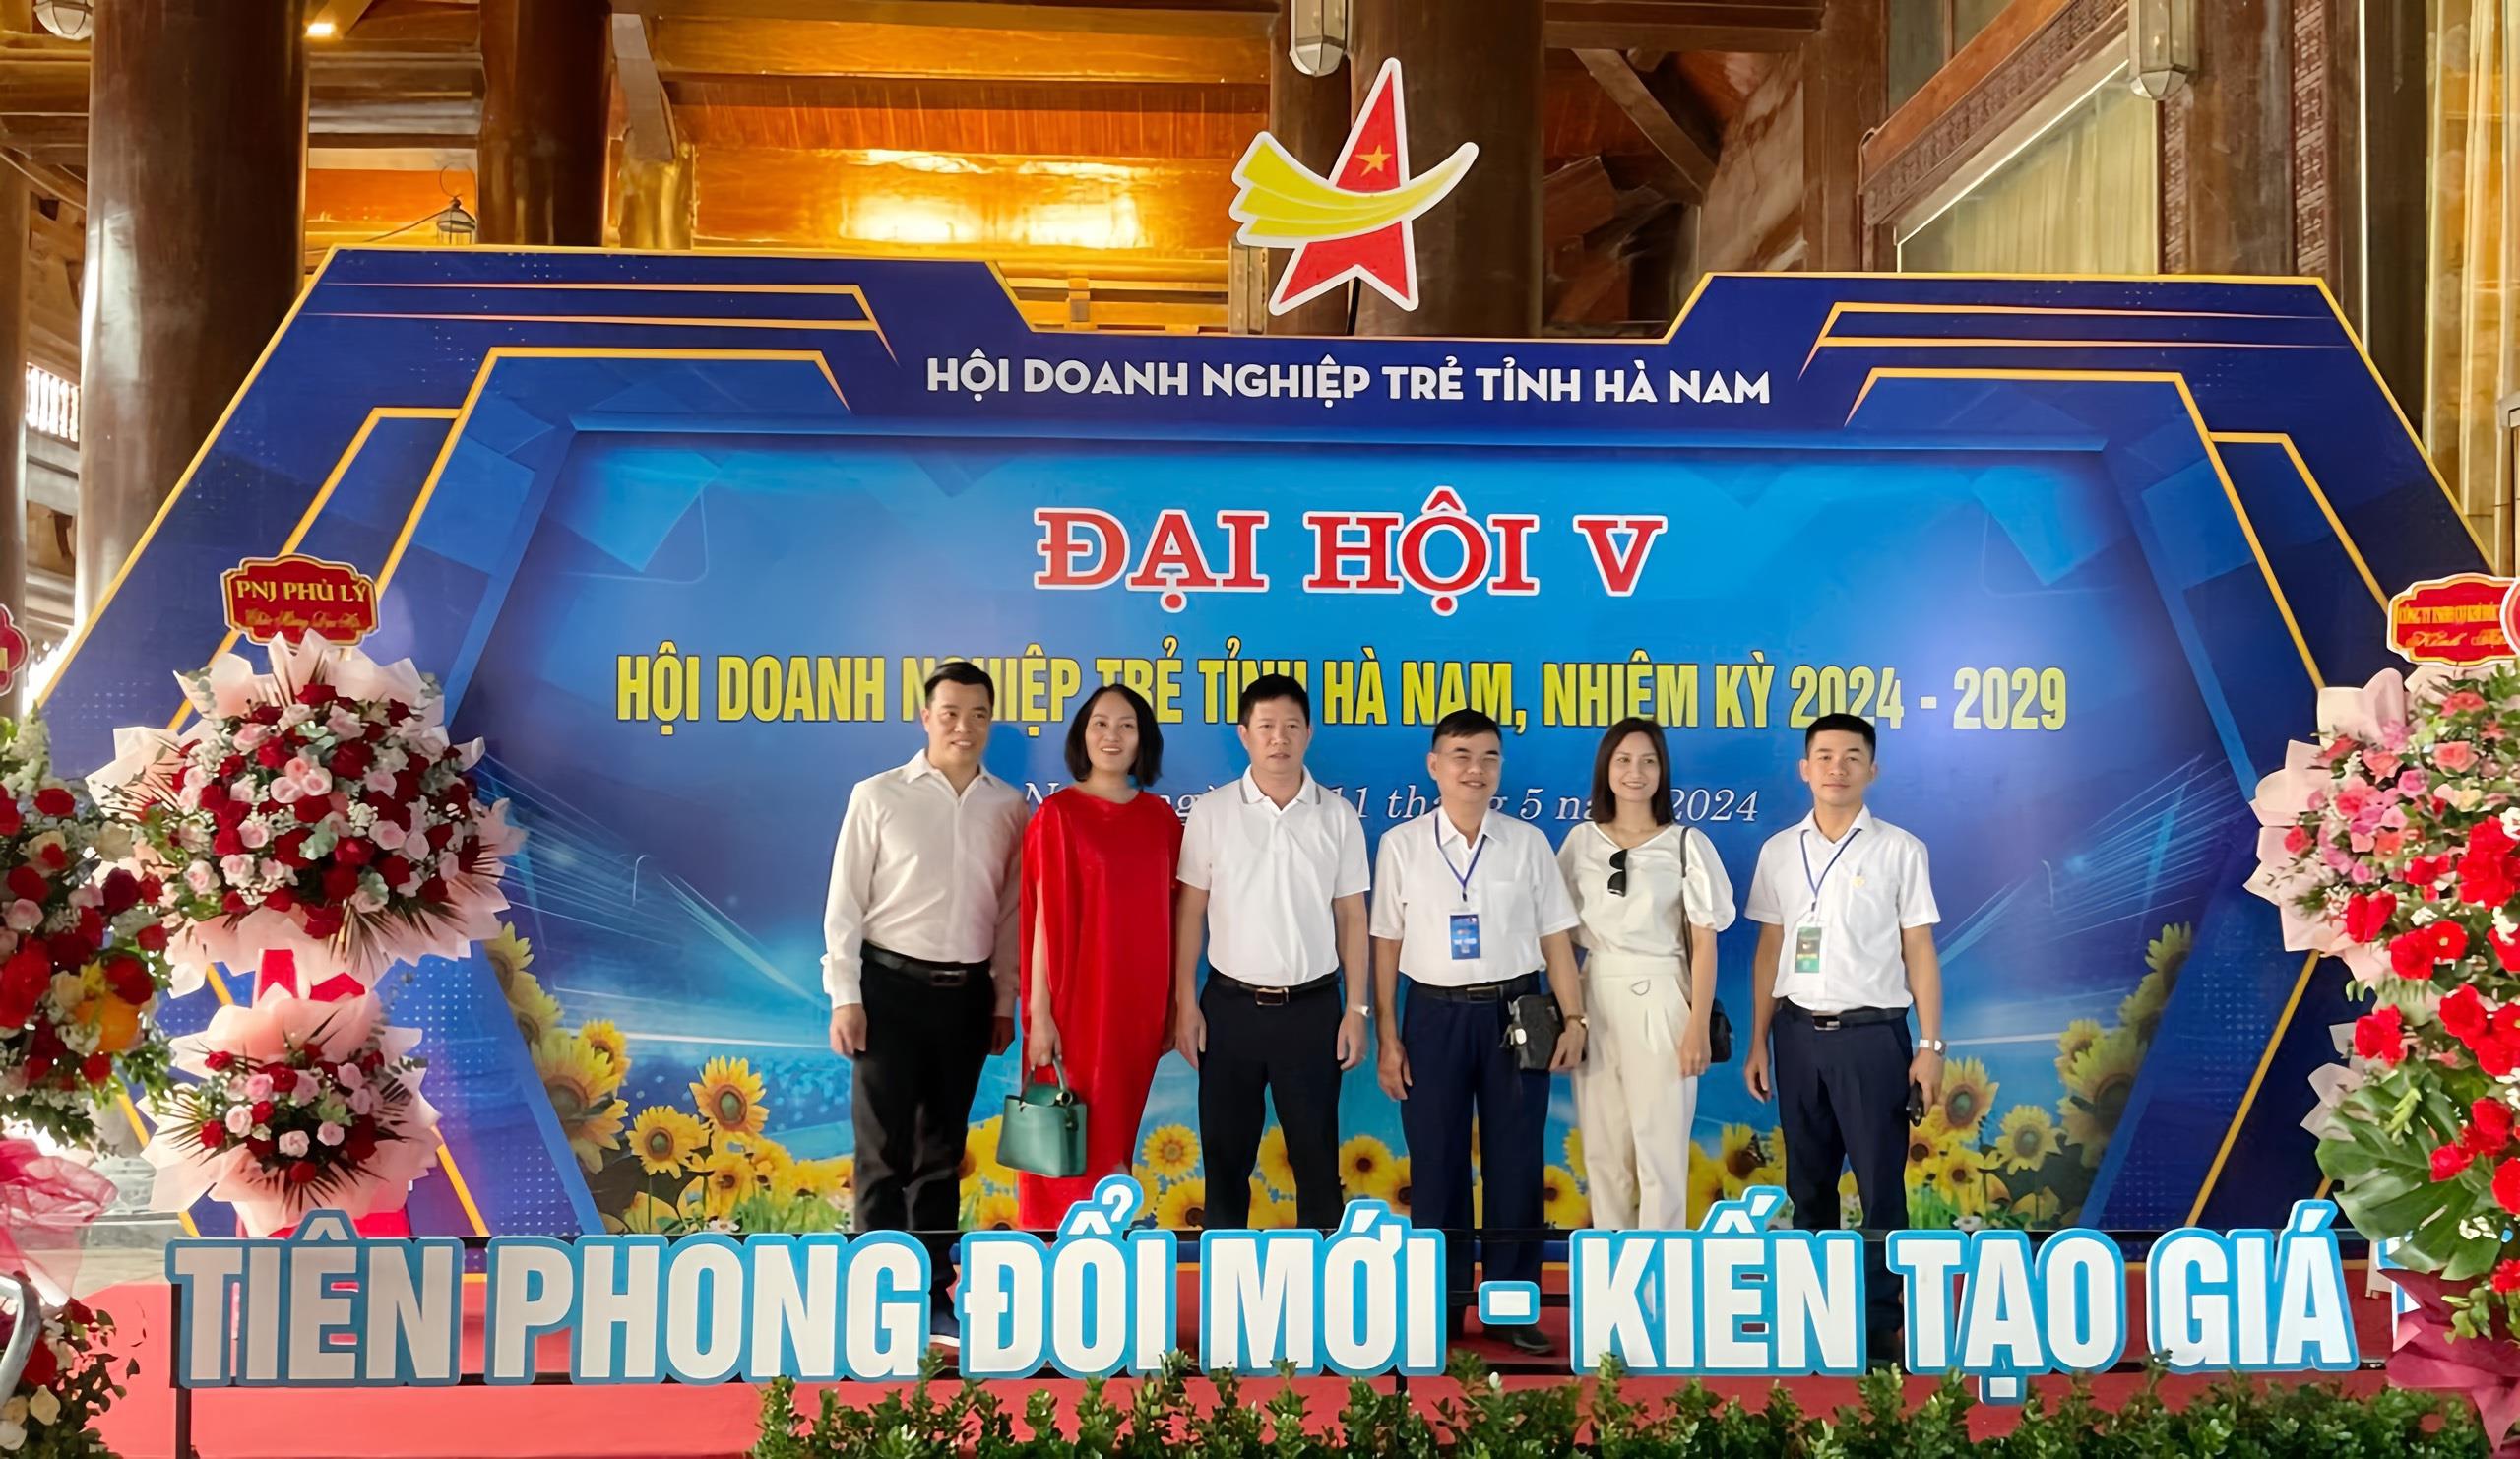 Đại hội Hội Doanh nghiệp trẻ tỉnh Hà Nam lần thứ V nhiệm kỳ 2024 - 2029